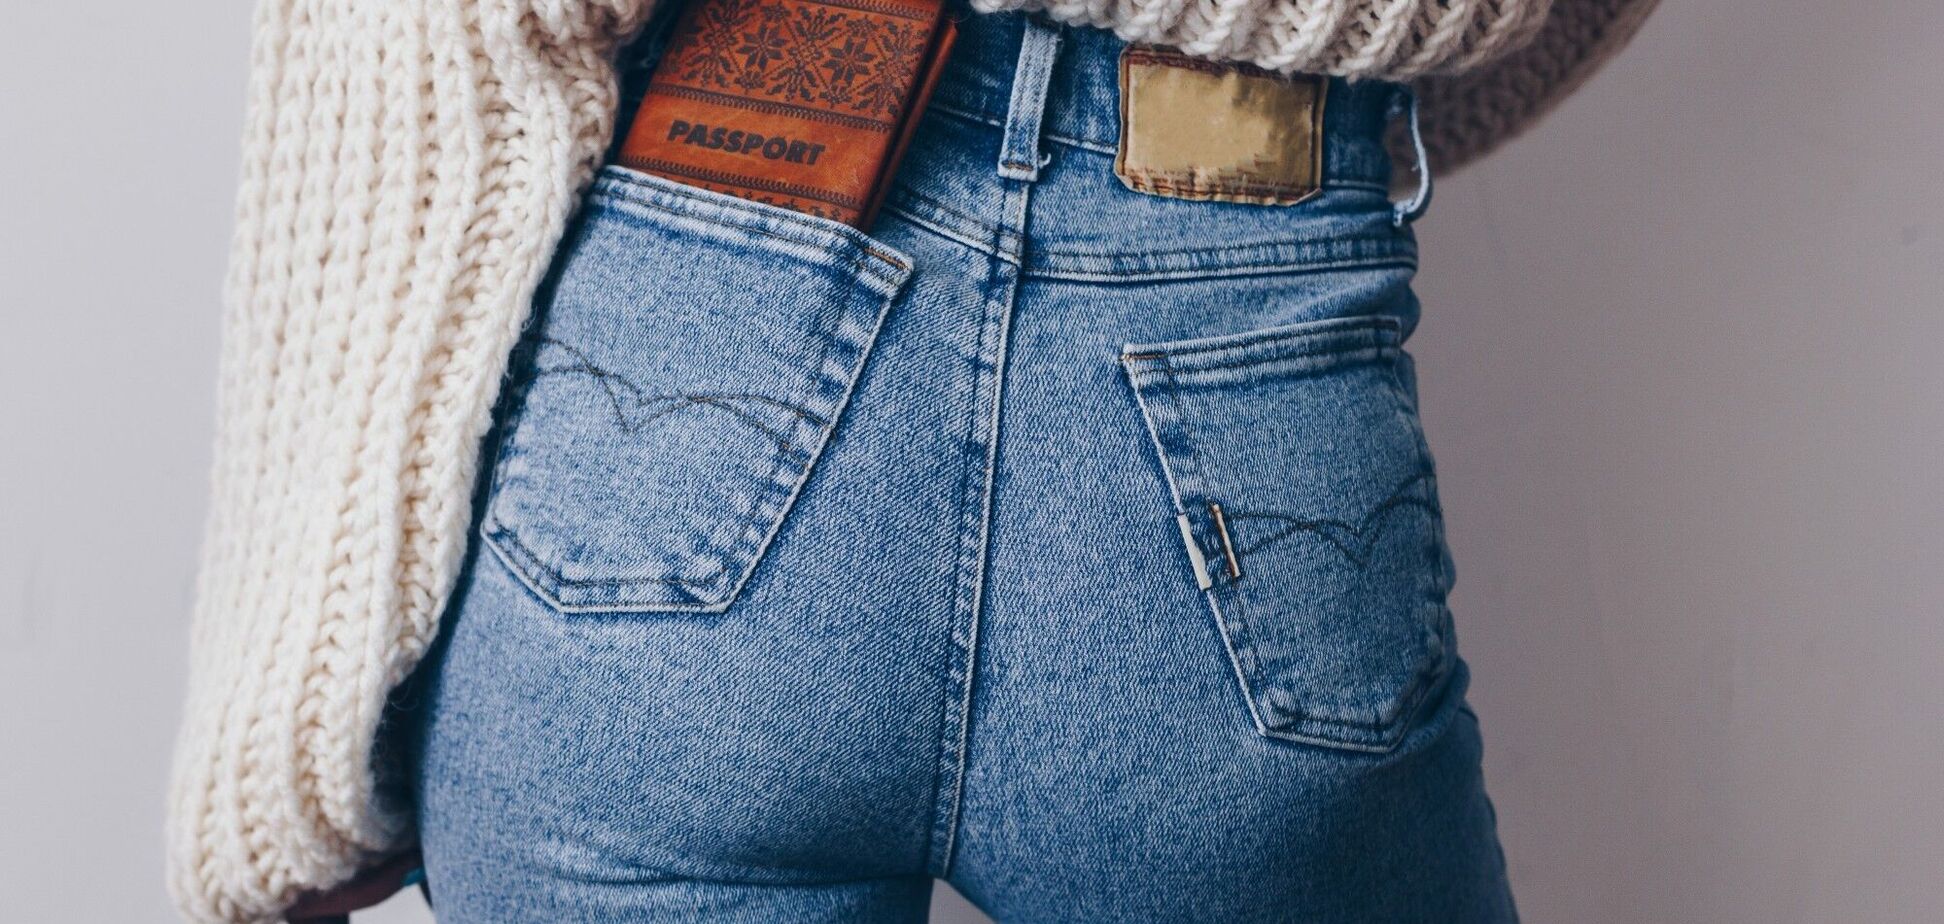 Названы модели джинсов, которые мужчины считают самыми сексуальными